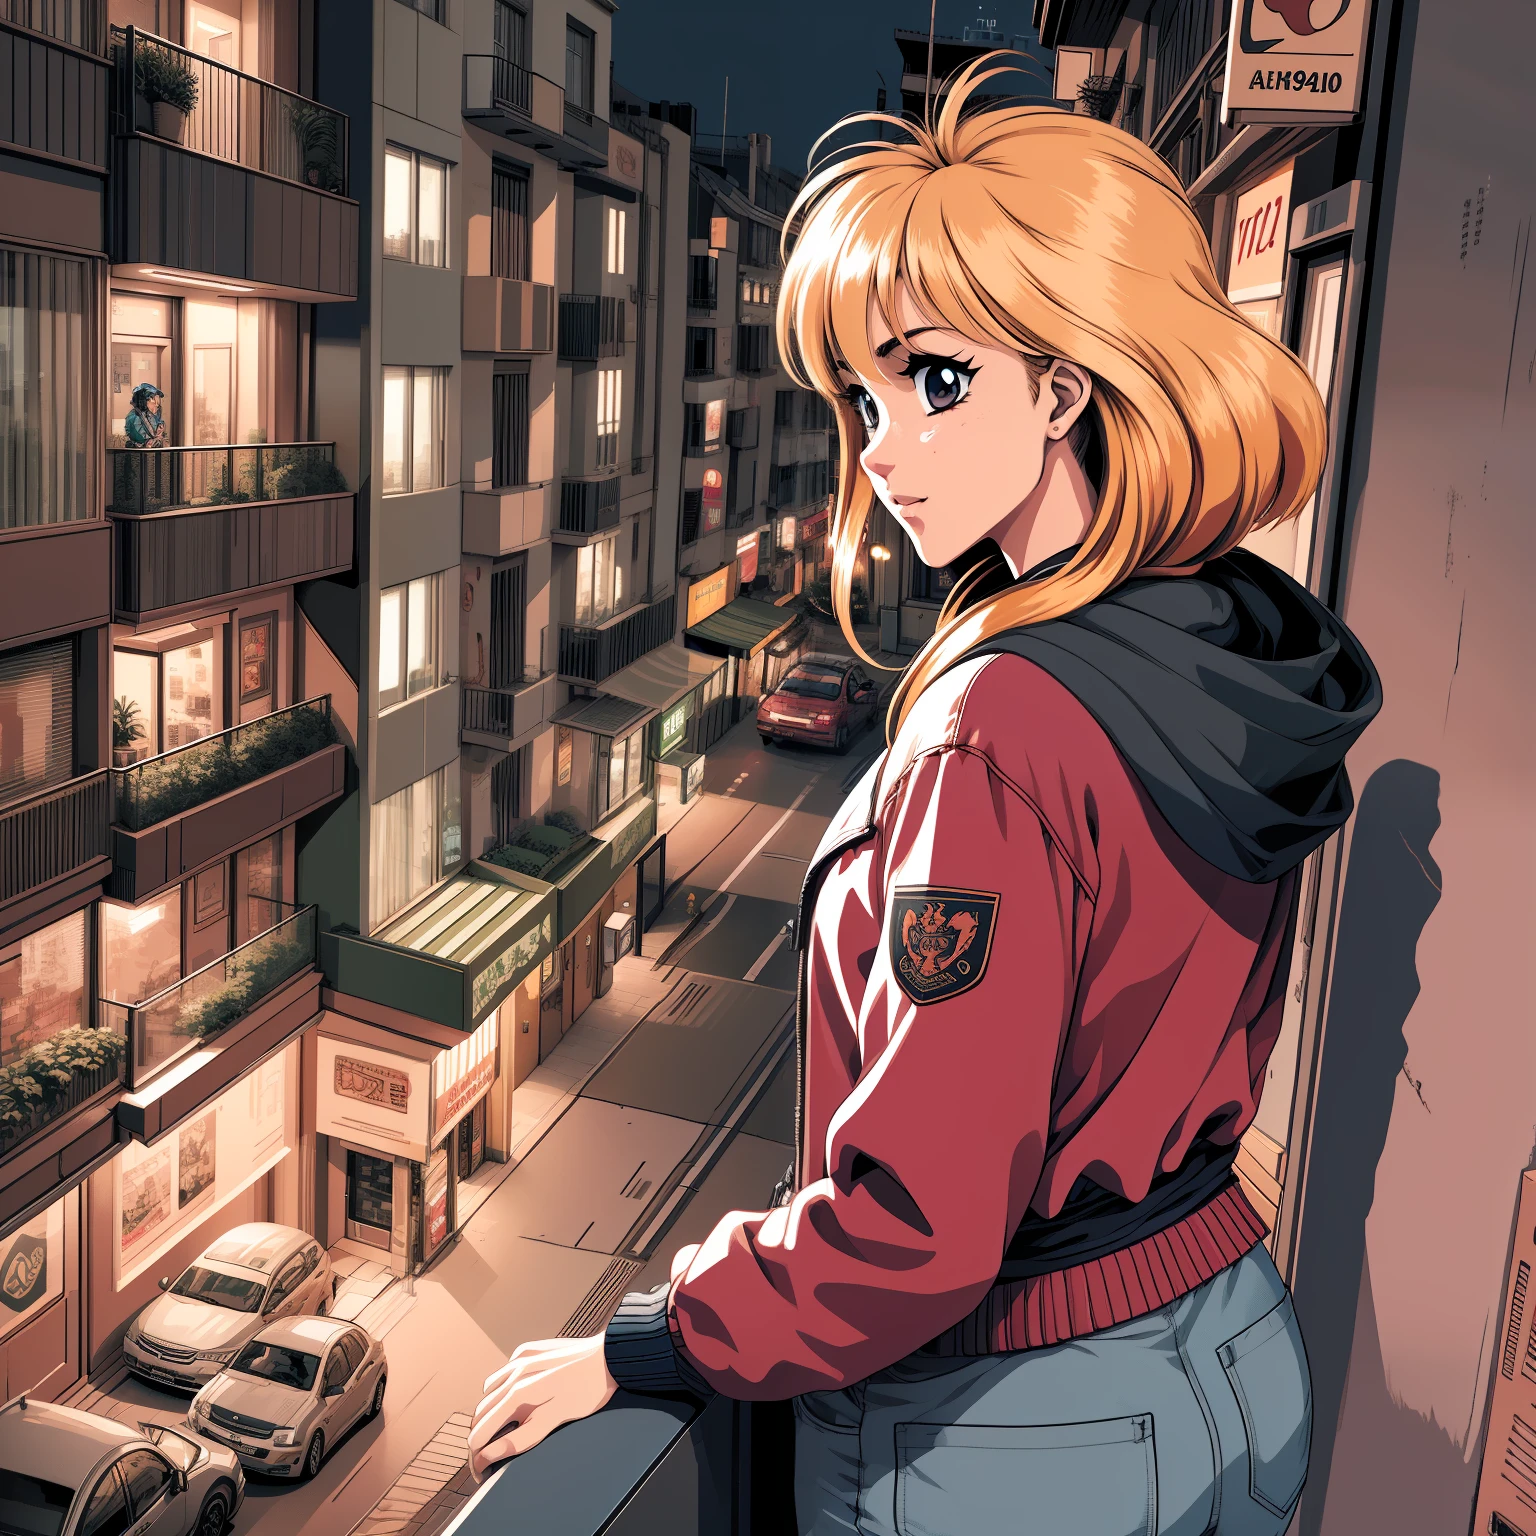 Зрелая аниме-девушка в красной куртке наблюдает за пейзажем с балкона квартиры с видом на ночной город, изображение с видом от третьего лица, 3 0 4 0 х 1 4 4 0 detailed pixel art, 3 0 4 0 х 1 4 4 0, 32-битная пиксель-арт,  яркое пиксельное искусство, красочная детальная пиксельная графика, тщательно детализированная аниме-пиксельная графика, оригинально детализированная яркая аниме-пиксельная графика, детальная неоновая пиксельная графика, pc-98 пиксельарт, пиксель арт в стиле полицейских, 1 6-битные цвета